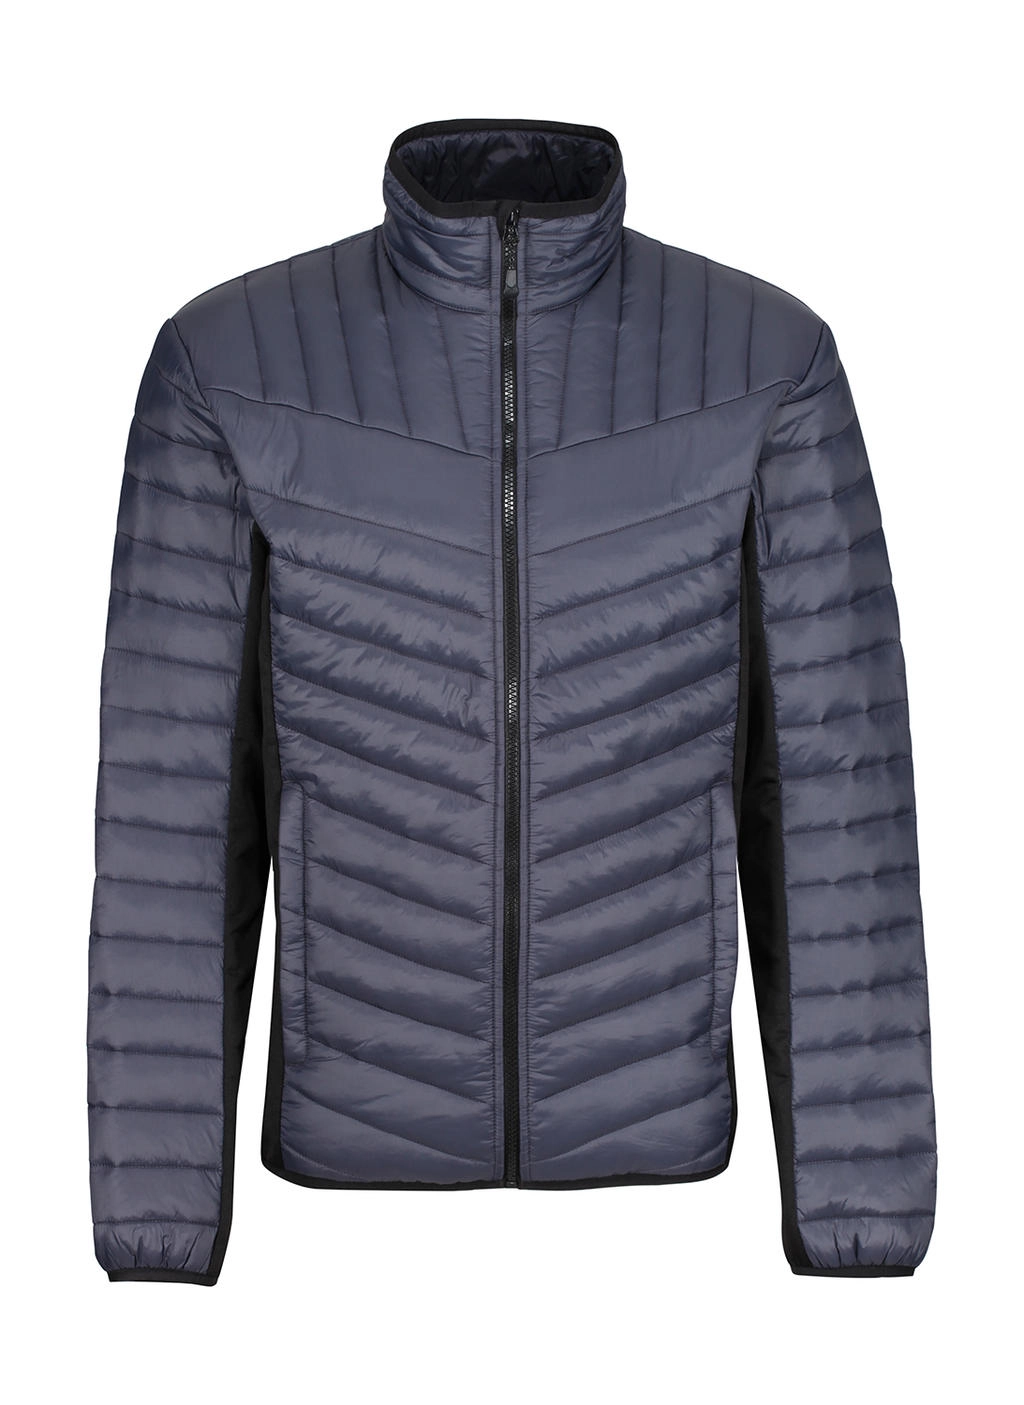 Tourer Hybrid Jacket zum Besticken und Bedrucken in der Farbe Seal Grey/Black mit Ihren Logo, Schriftzug oder Motiv.